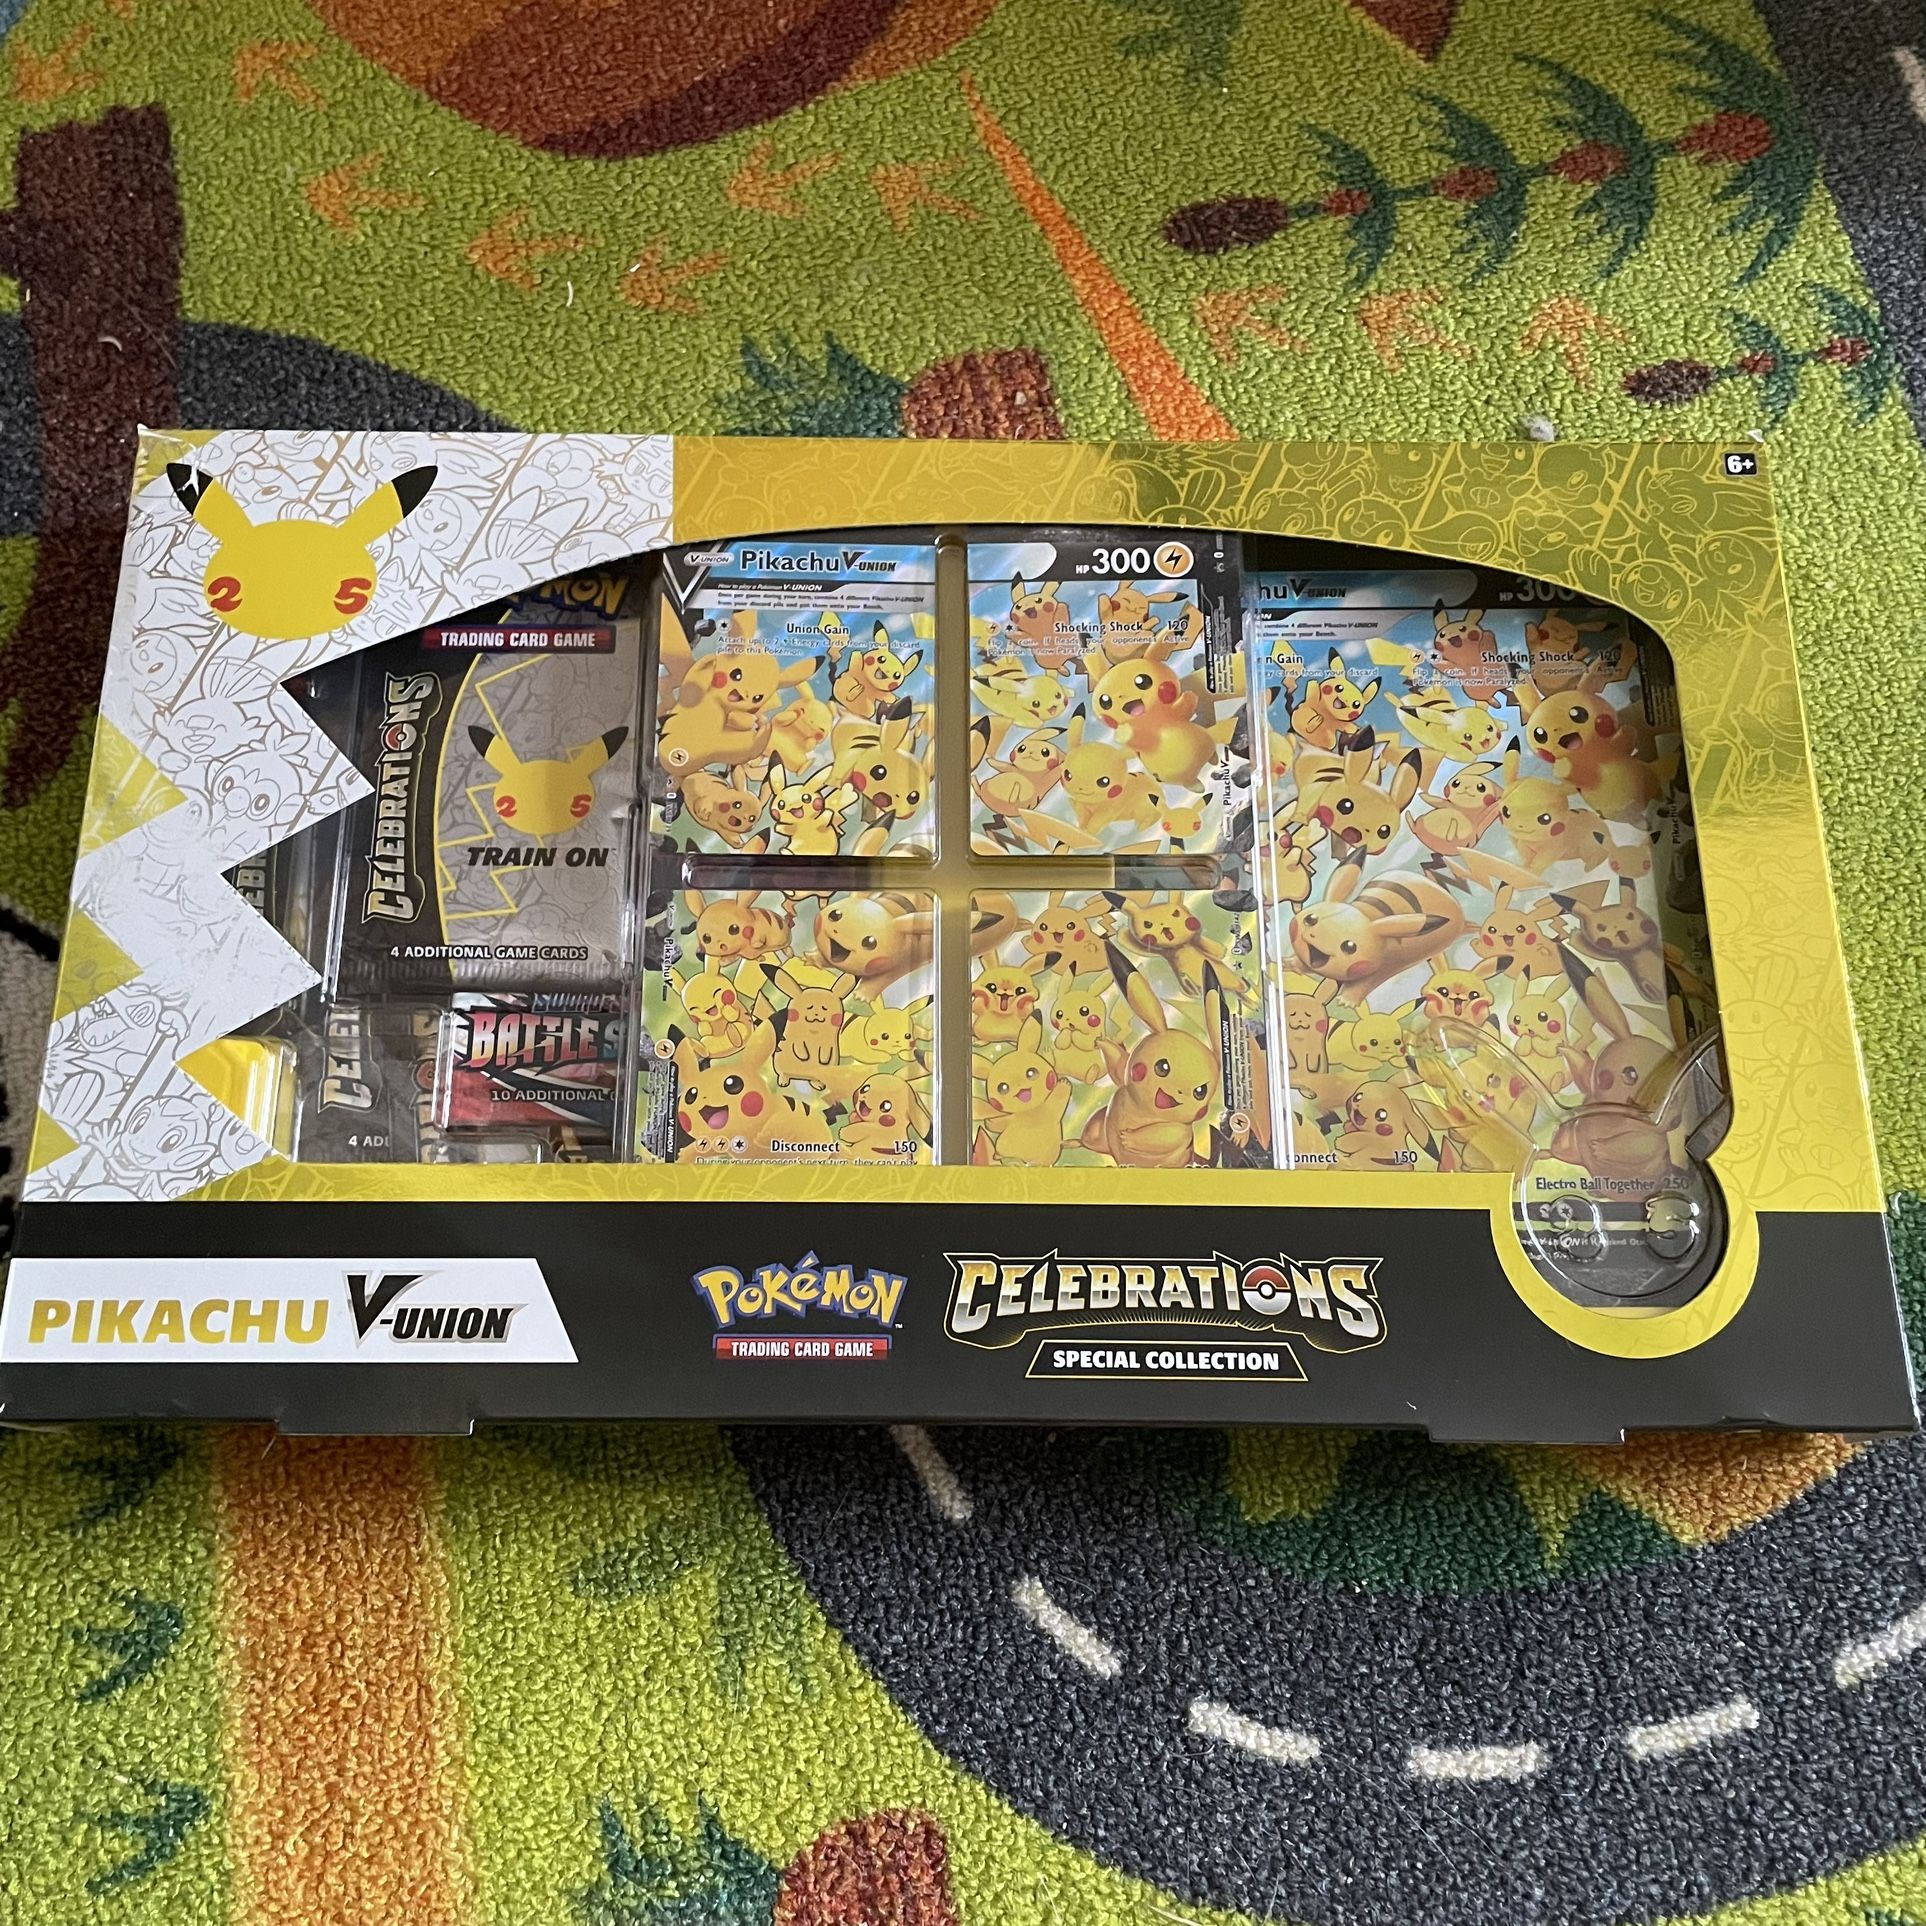 Celebrations Pikachu V-Union Box Pokémon 